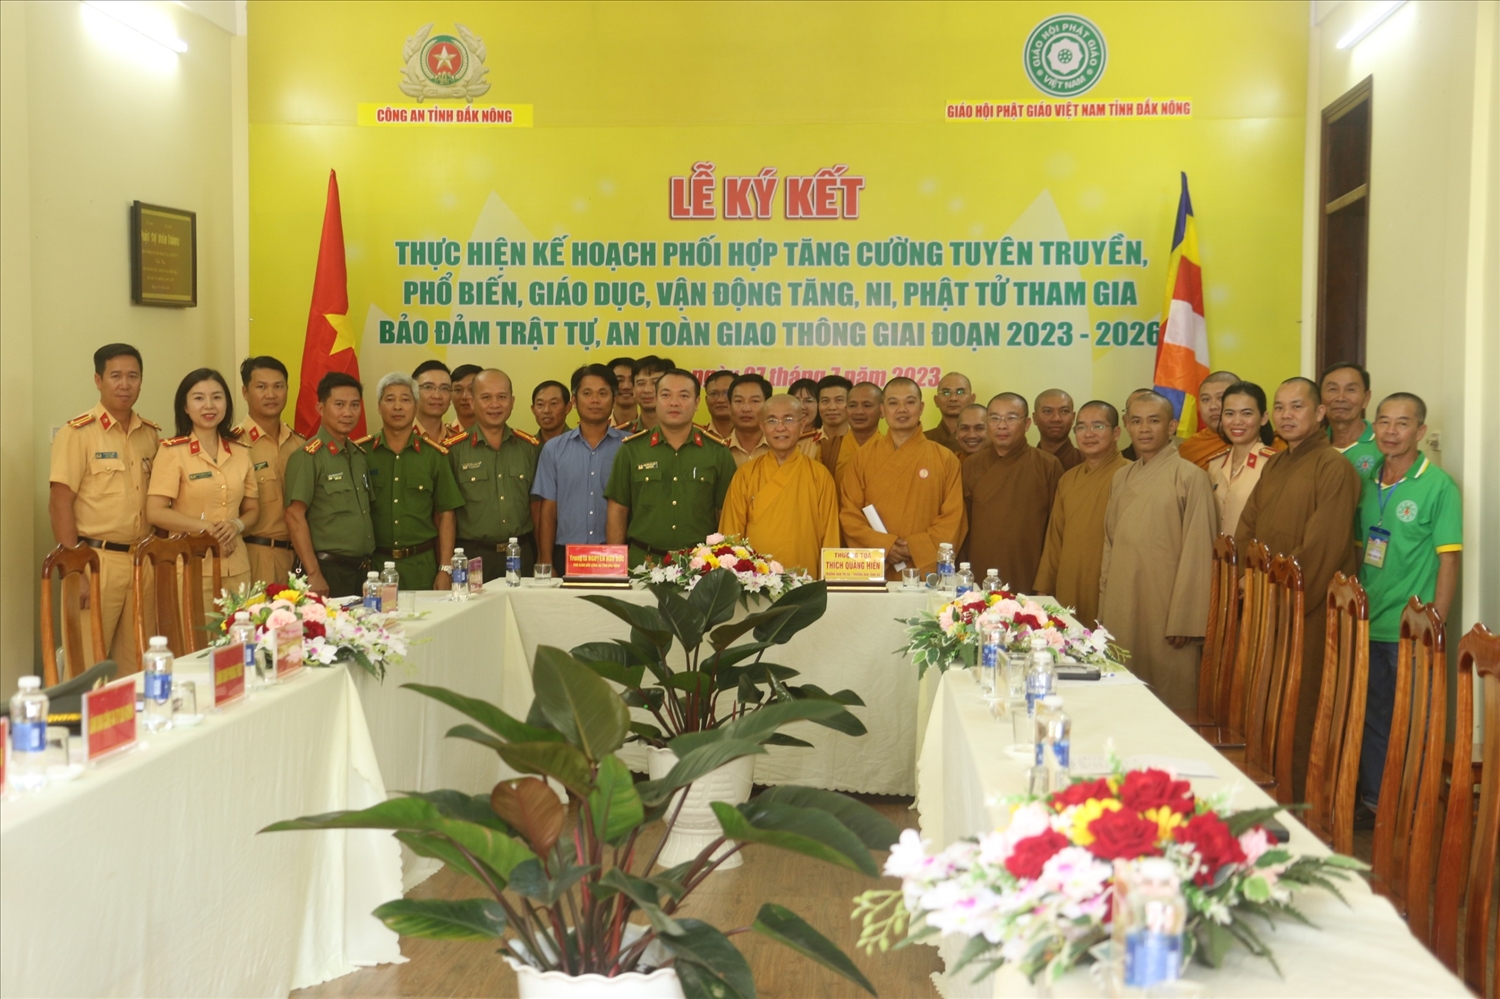 Công an tỉnh Đắk Nông và Giáo hội Phật giáo tỉnh Đắk Nông chụp ảnh lưu niệm